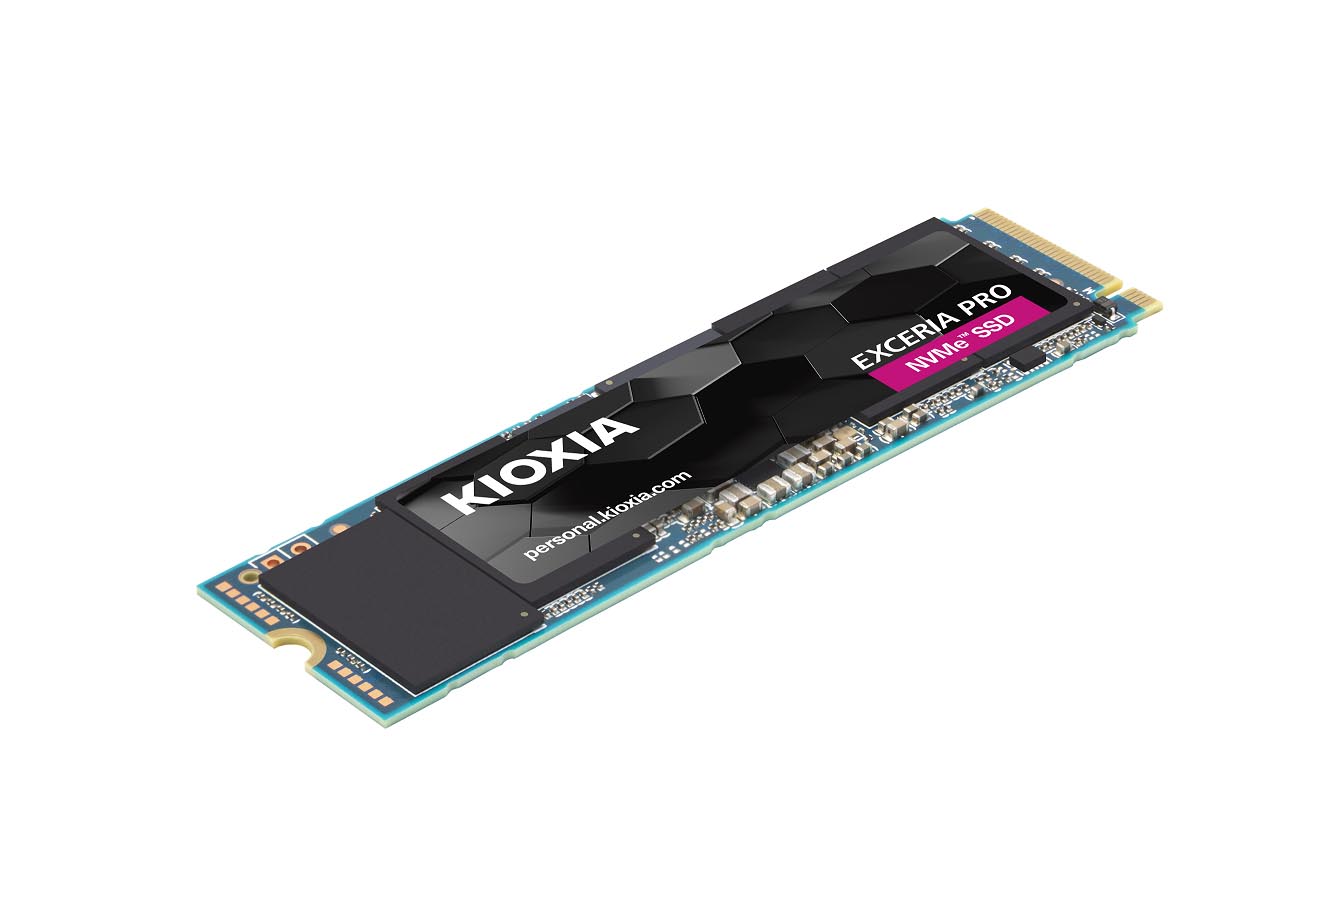 キオクシア、PCIe 4.0対応のパーソナル向けM.2 NVMe SSD「EXCERIA PRO 